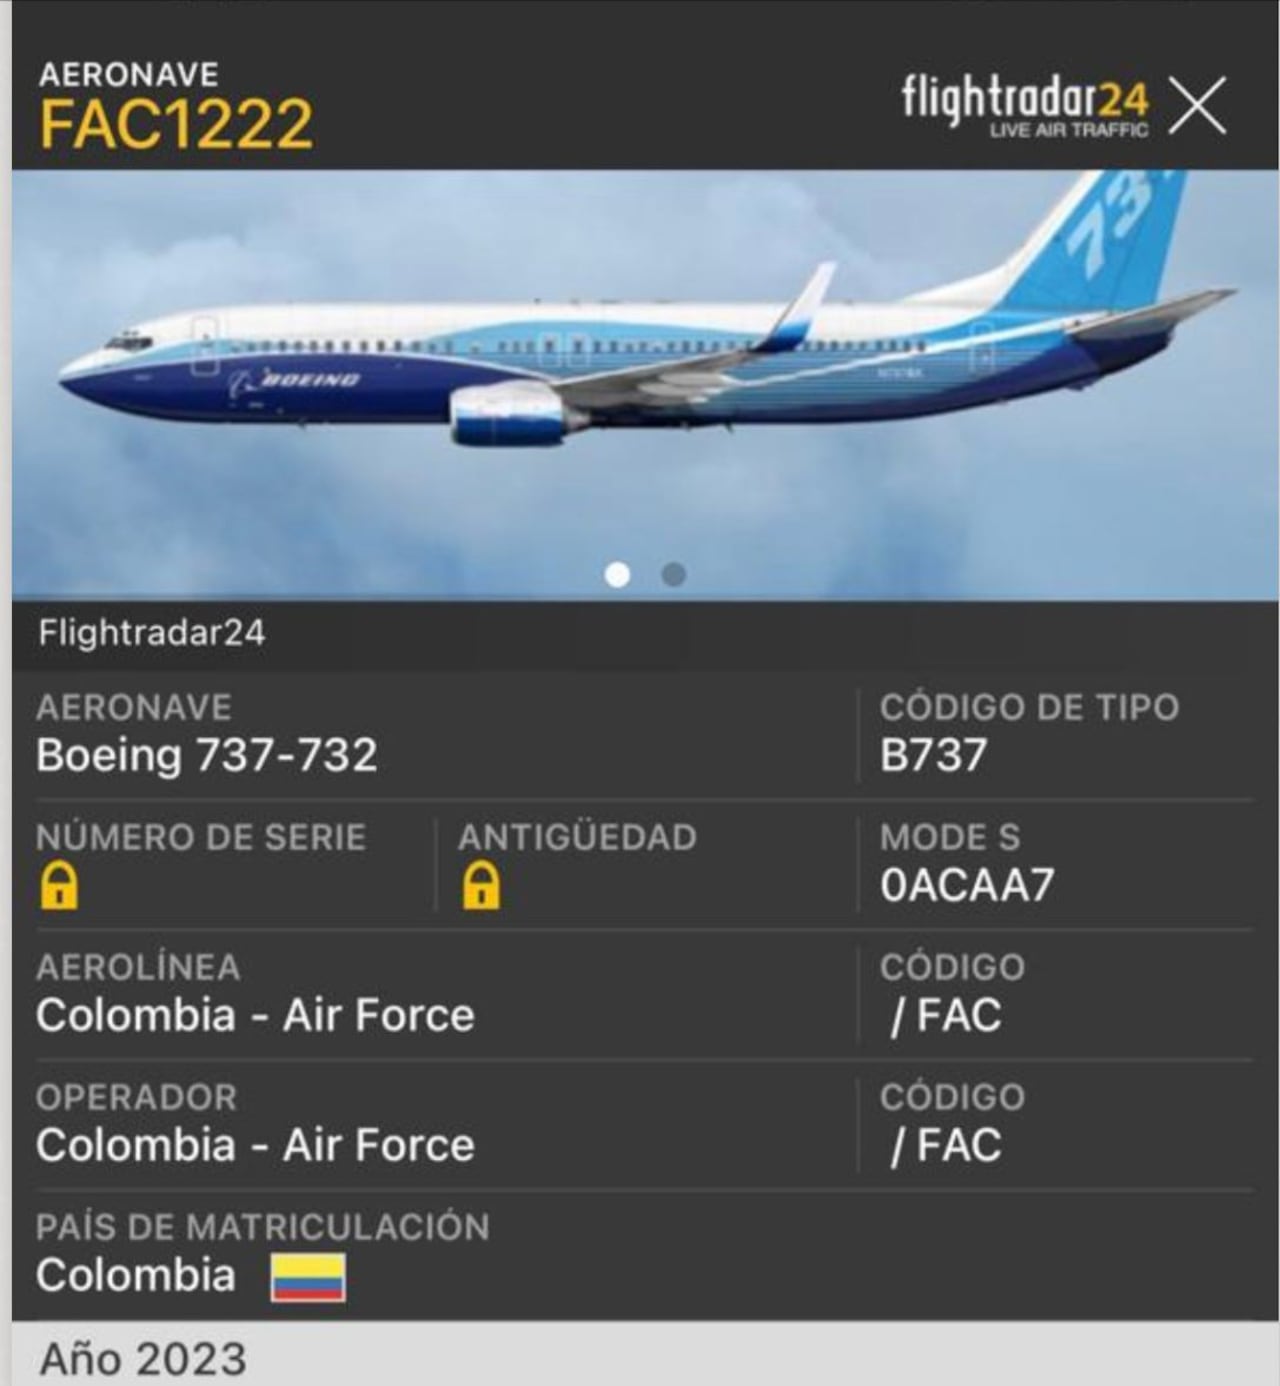 Itinerario avión FAC 1222.